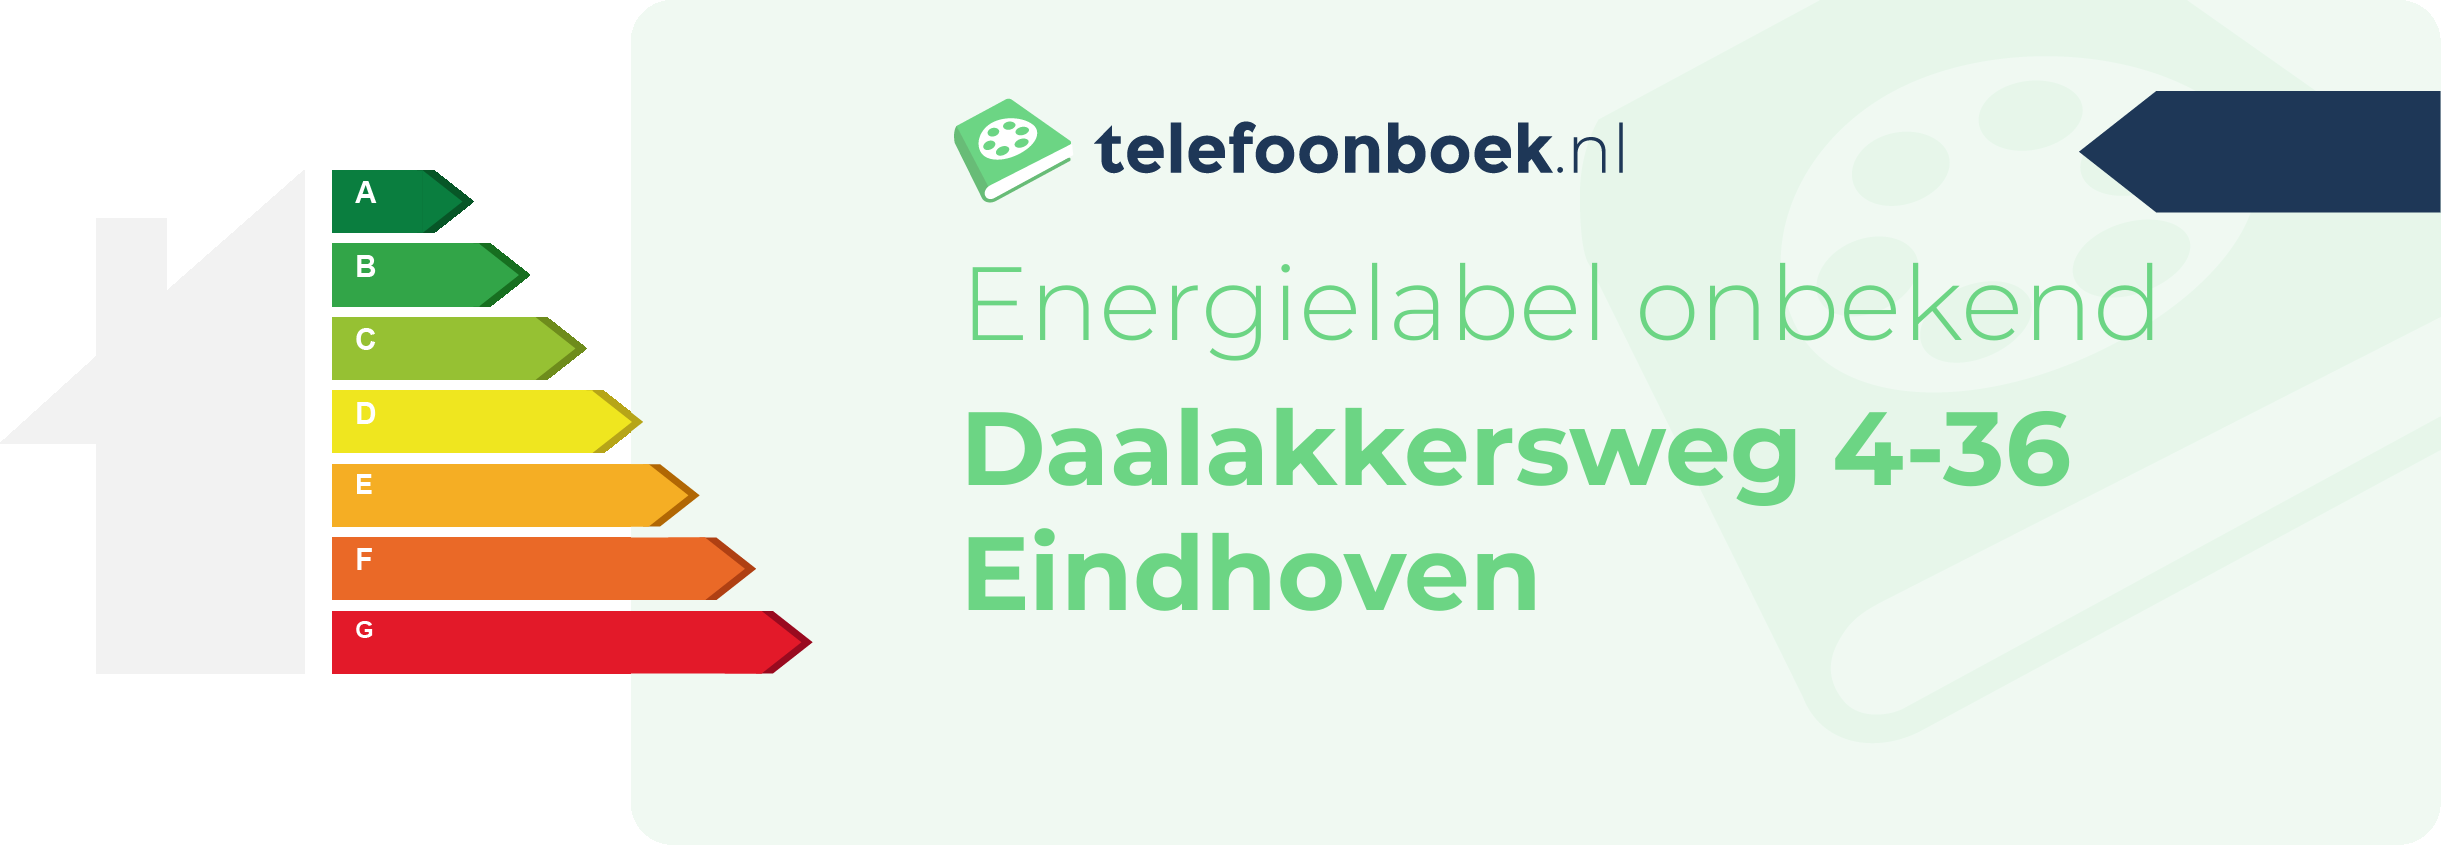 Energielabel Daalakkersweg 4-36 Eindhoven